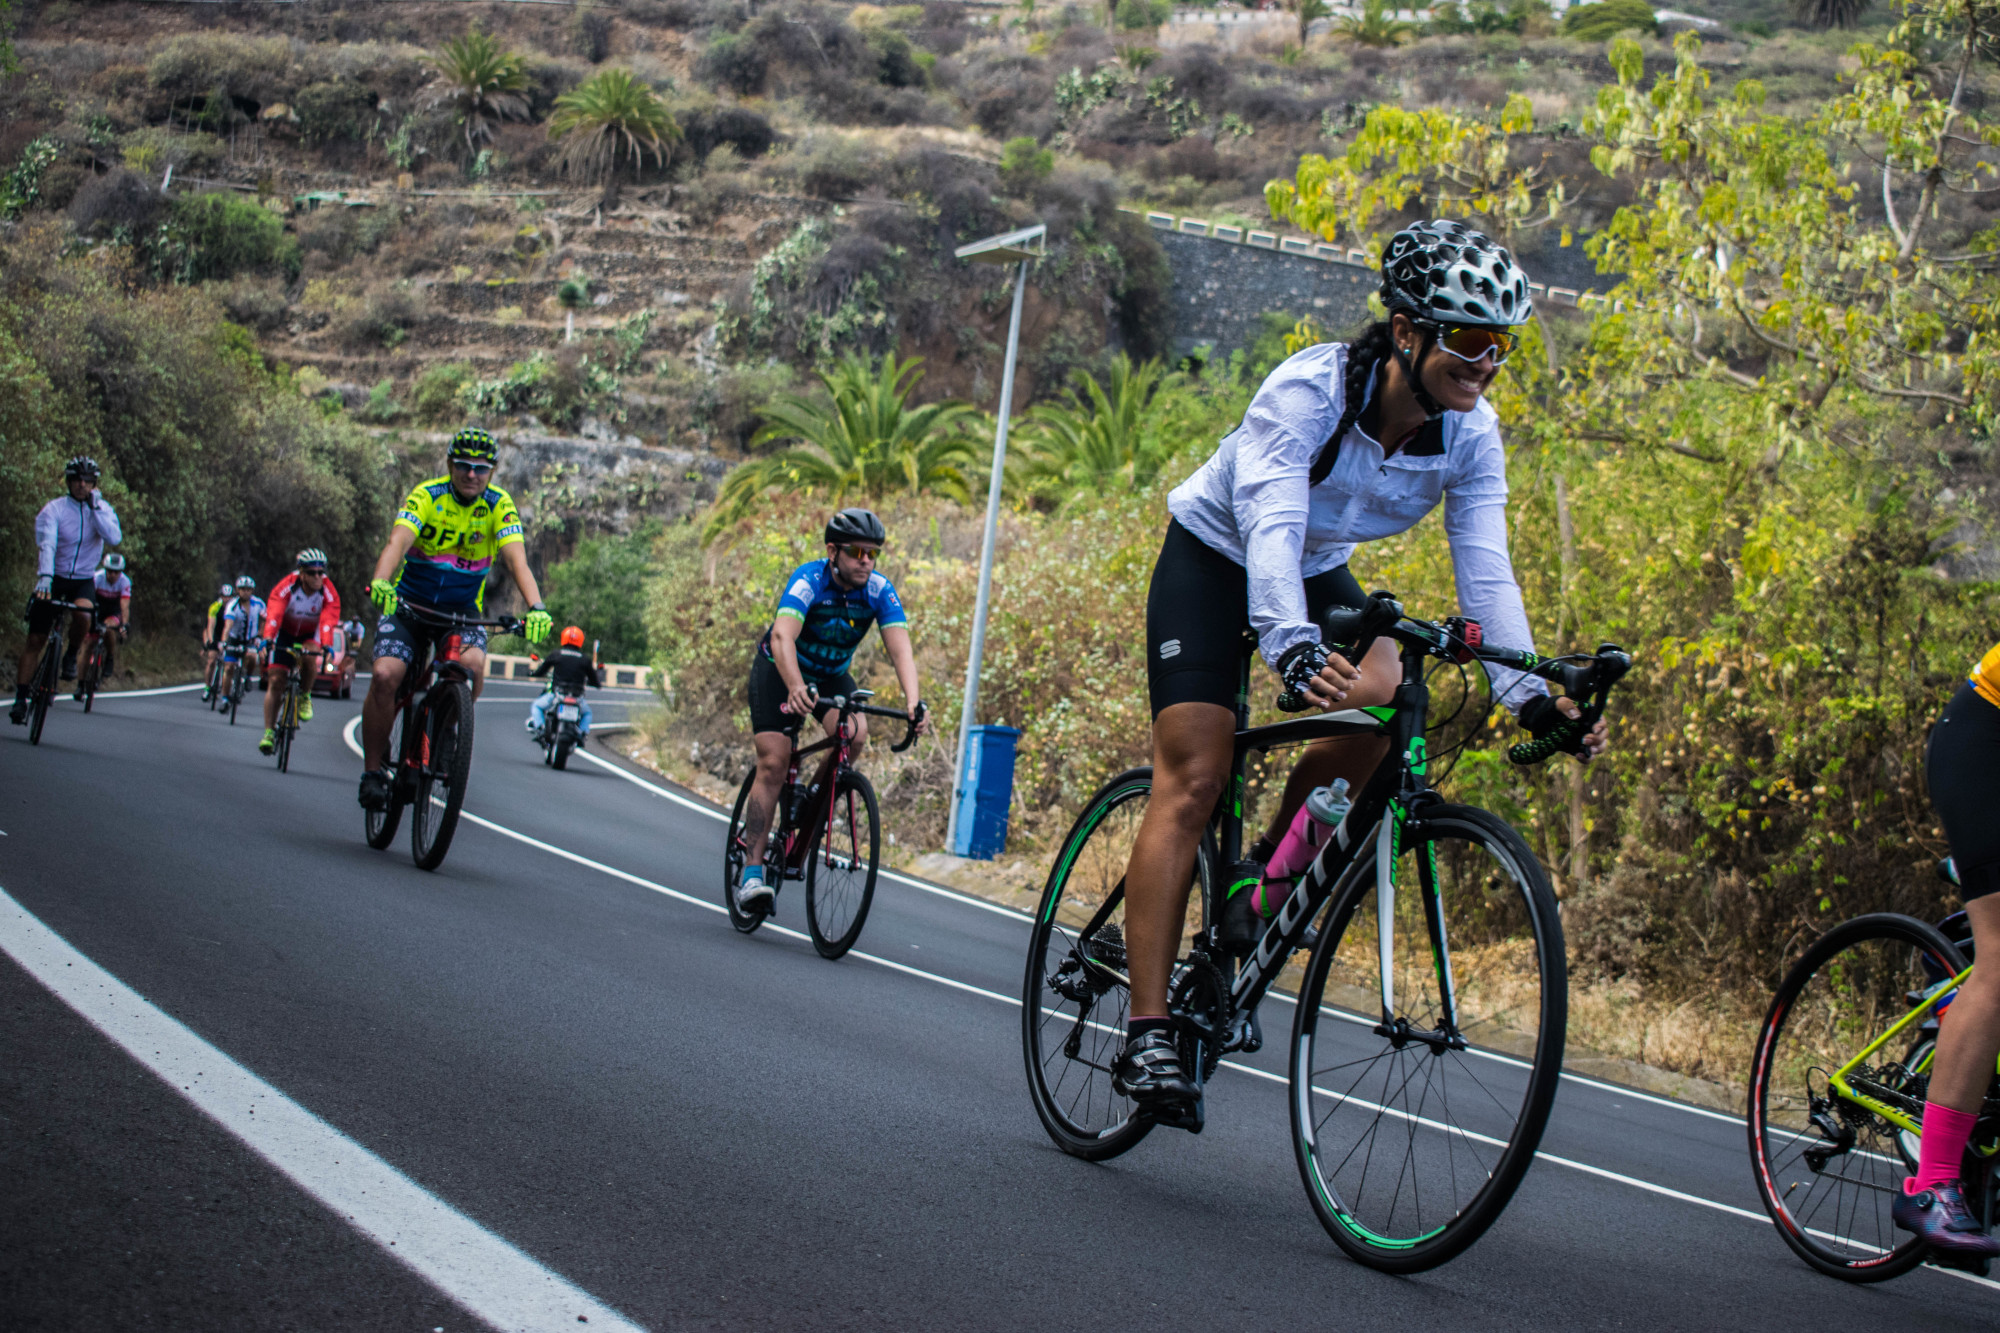 Los VII Juegos Máster estrenan cicloturismo en carretera con una ruta circular en La Guancha